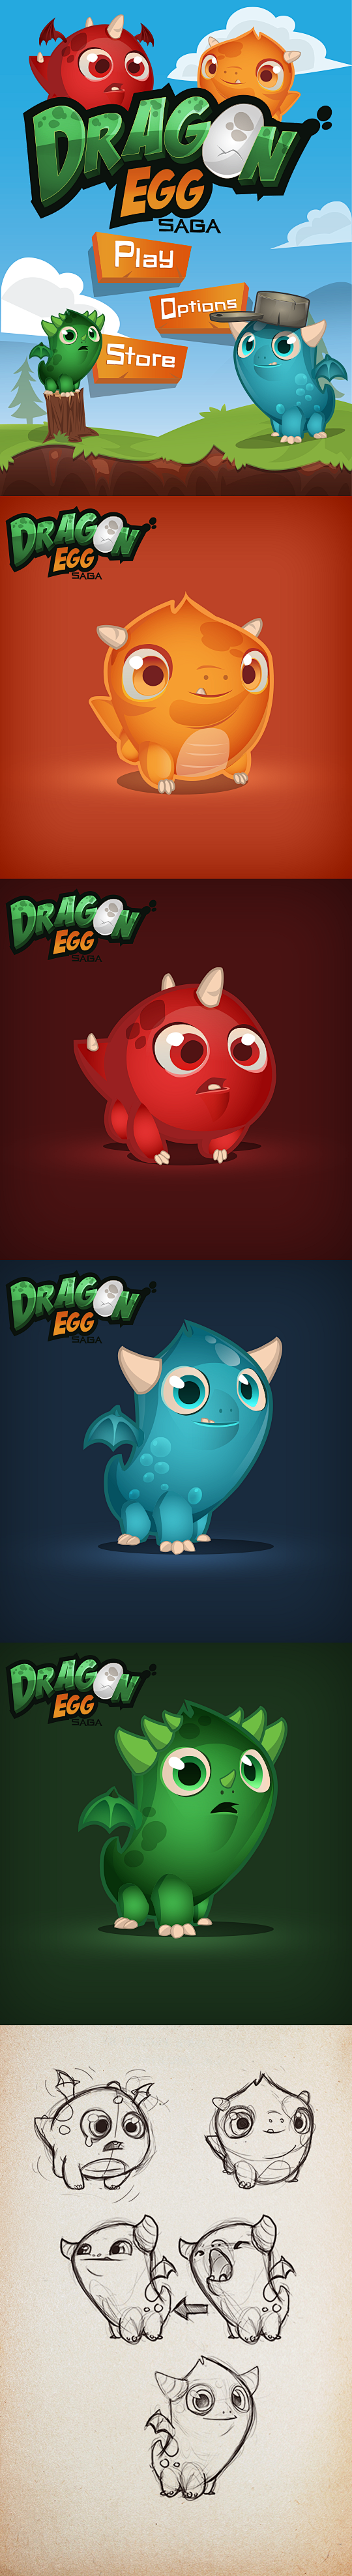 Dragon Egg Saga on B...